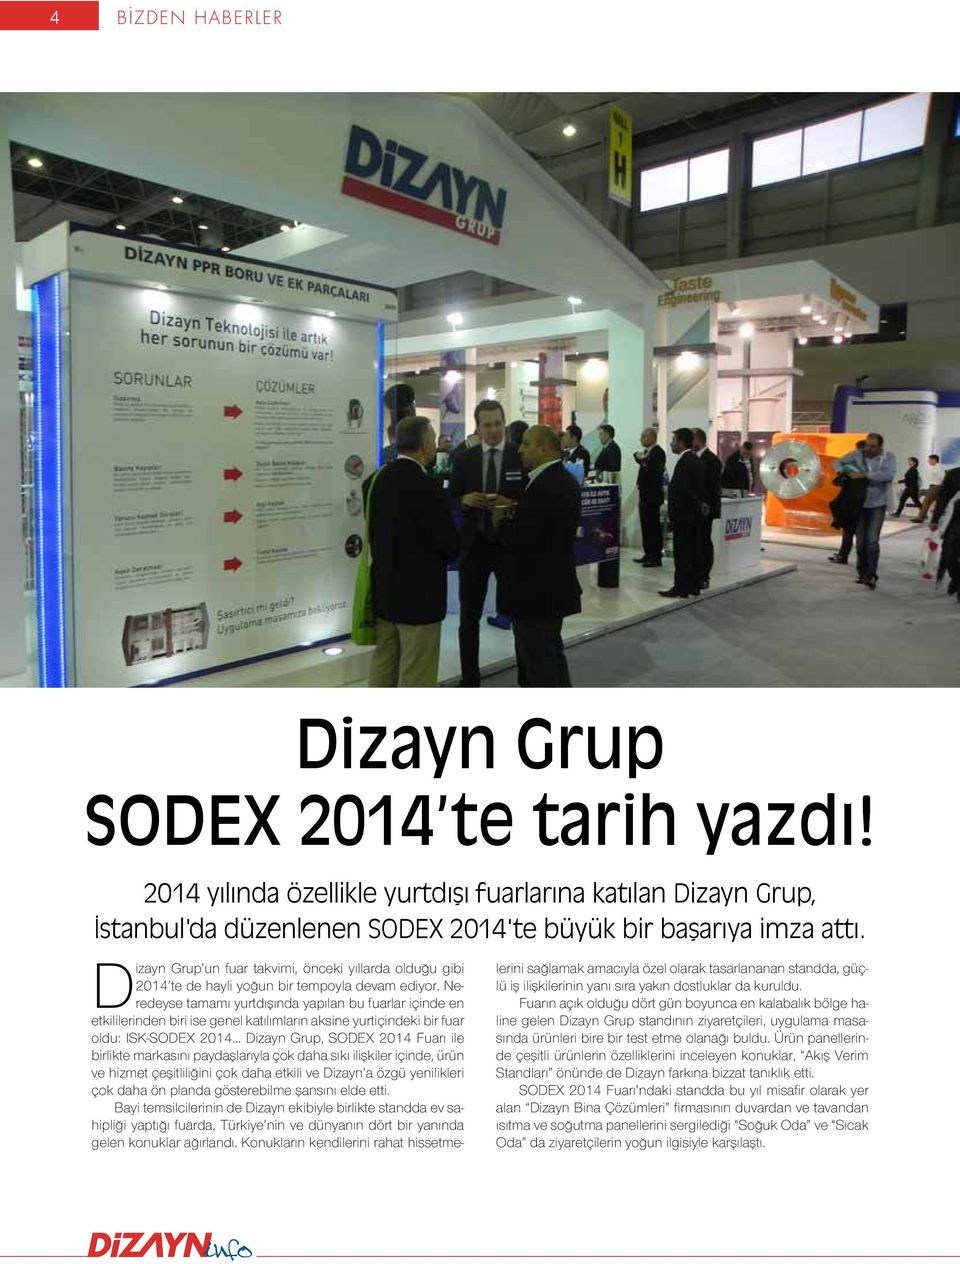 Neredeyse tamamı yurtdışında yapılan bu fuarlar içinde en etkililerinden biri ise genel katılımların aksine yurtiçindeki bir fuar oldu: ISK-SODEX 2014 Dizayn Grup, SODEX 2014 Fuarı ile birlikte